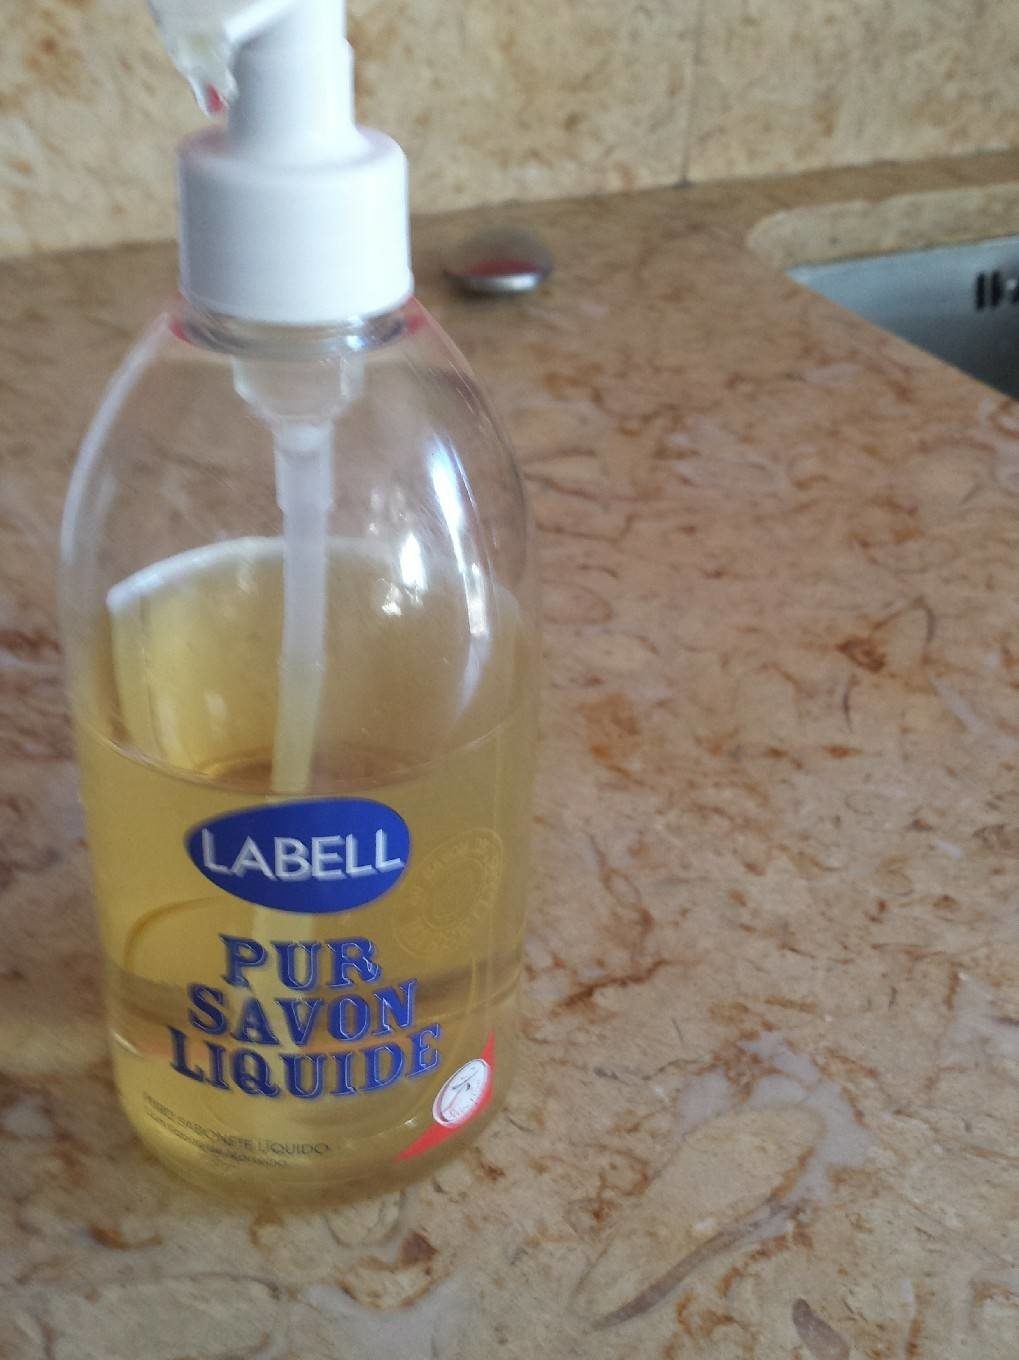 Pur savon liquide - Tuote - fr